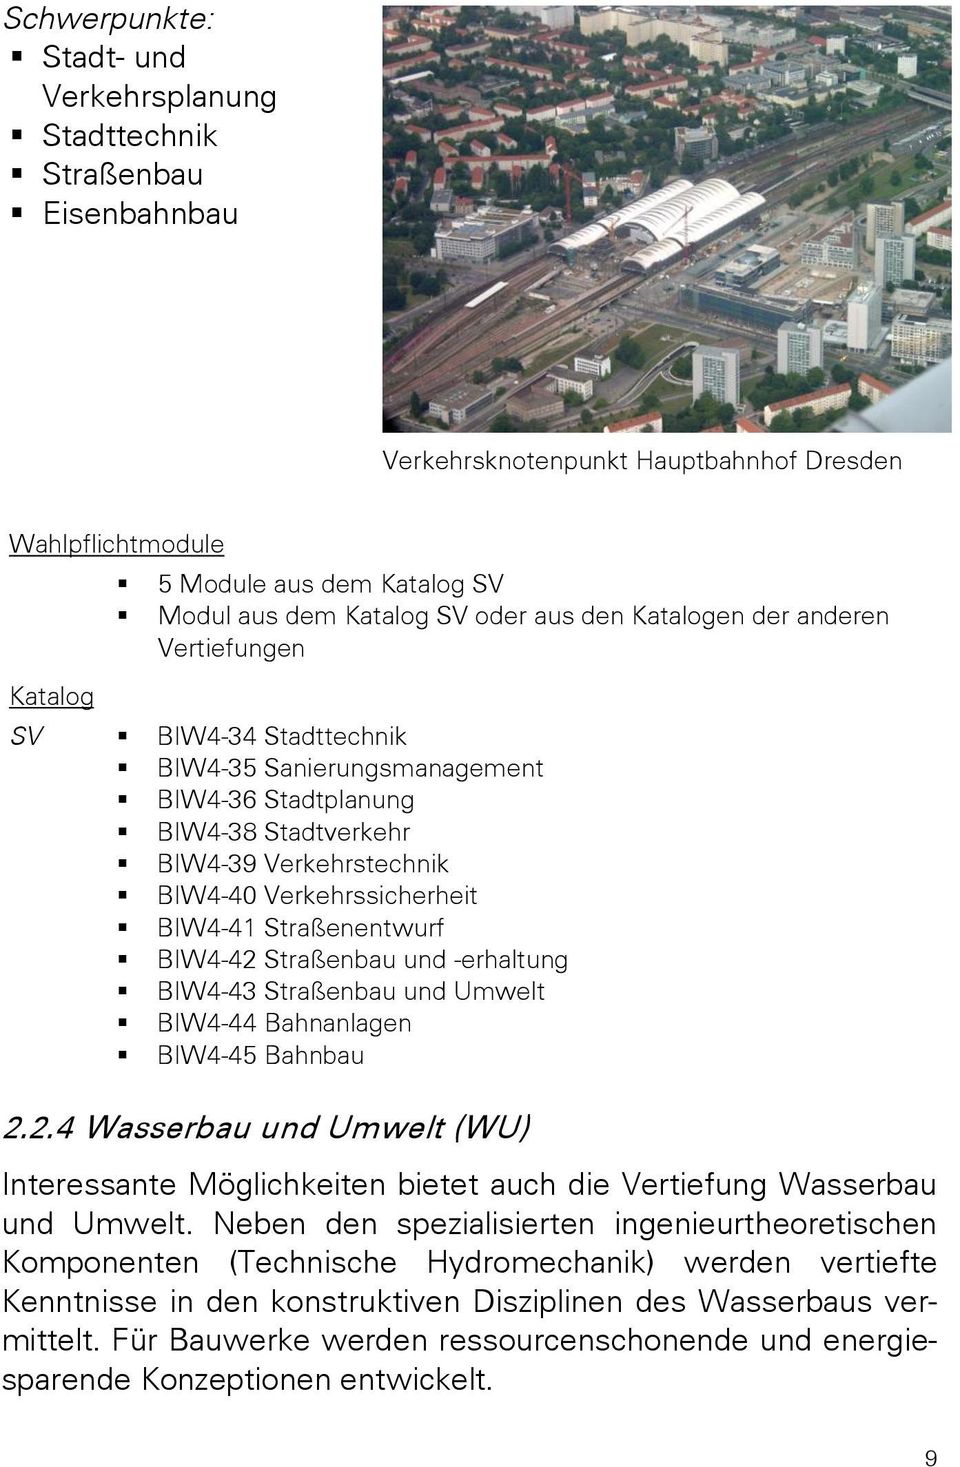 BIW4-41 Straßenentwurf BIW4-42 Straßenbau und -erhaltung BIW4-43 Straßenbau und Umwelt BIW4-44 Bahnanlagen BIW4-45 Bahnbau 2.2.4 Wasserbau und Umwelt (WU) Interessante Möglichkeiten bietet auch die Vertiefung Wasserbau und Umwelt.